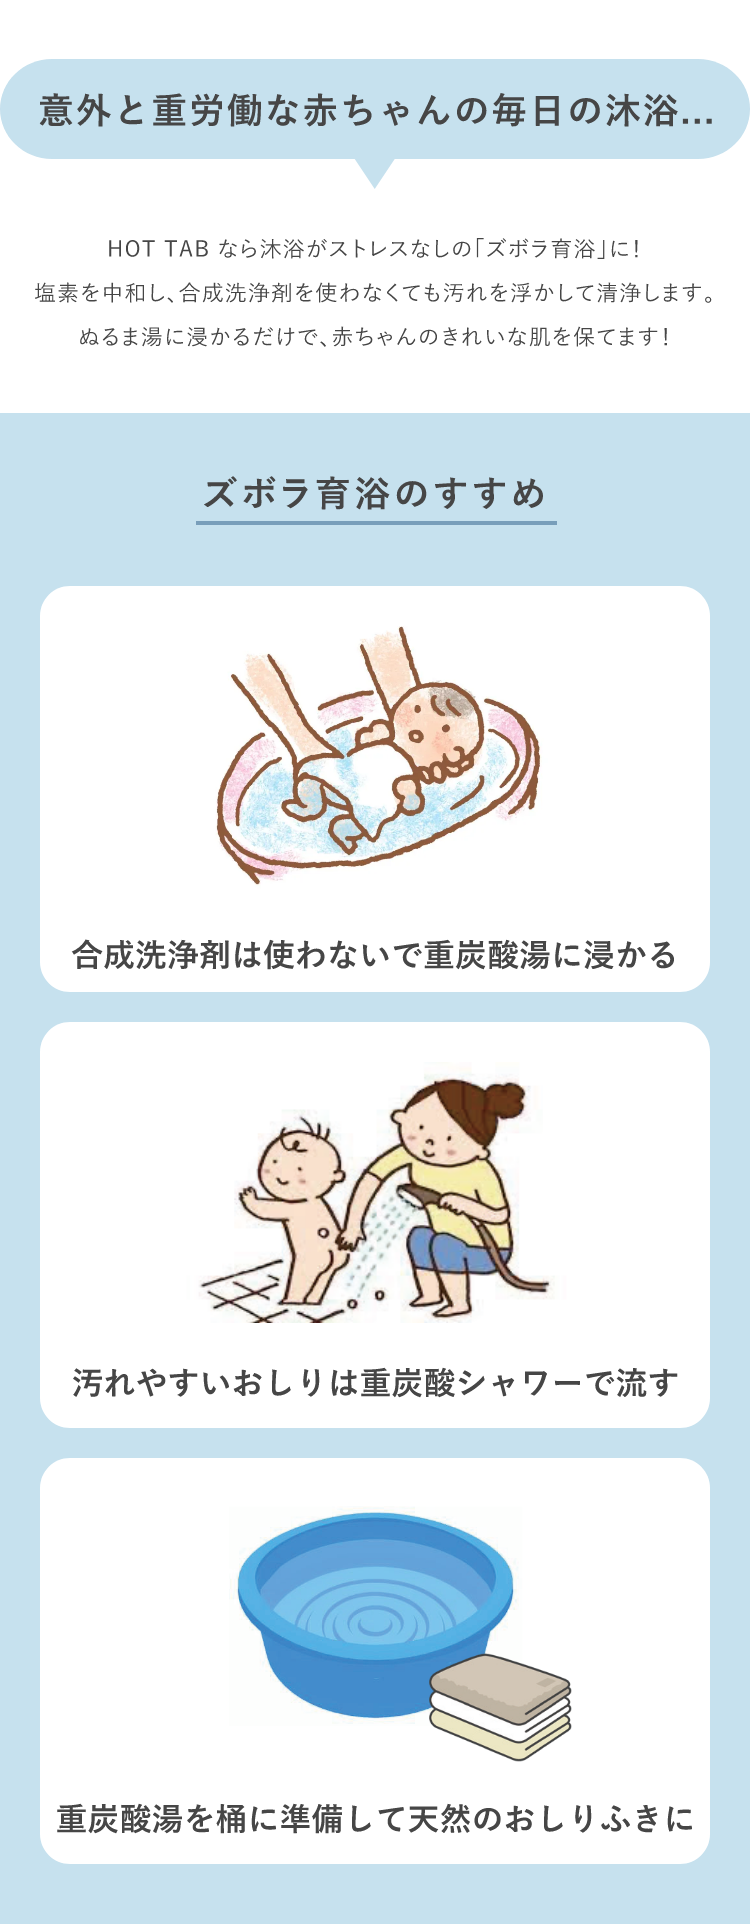 意外と重労働な赤ちゃんの毎日の沐浴